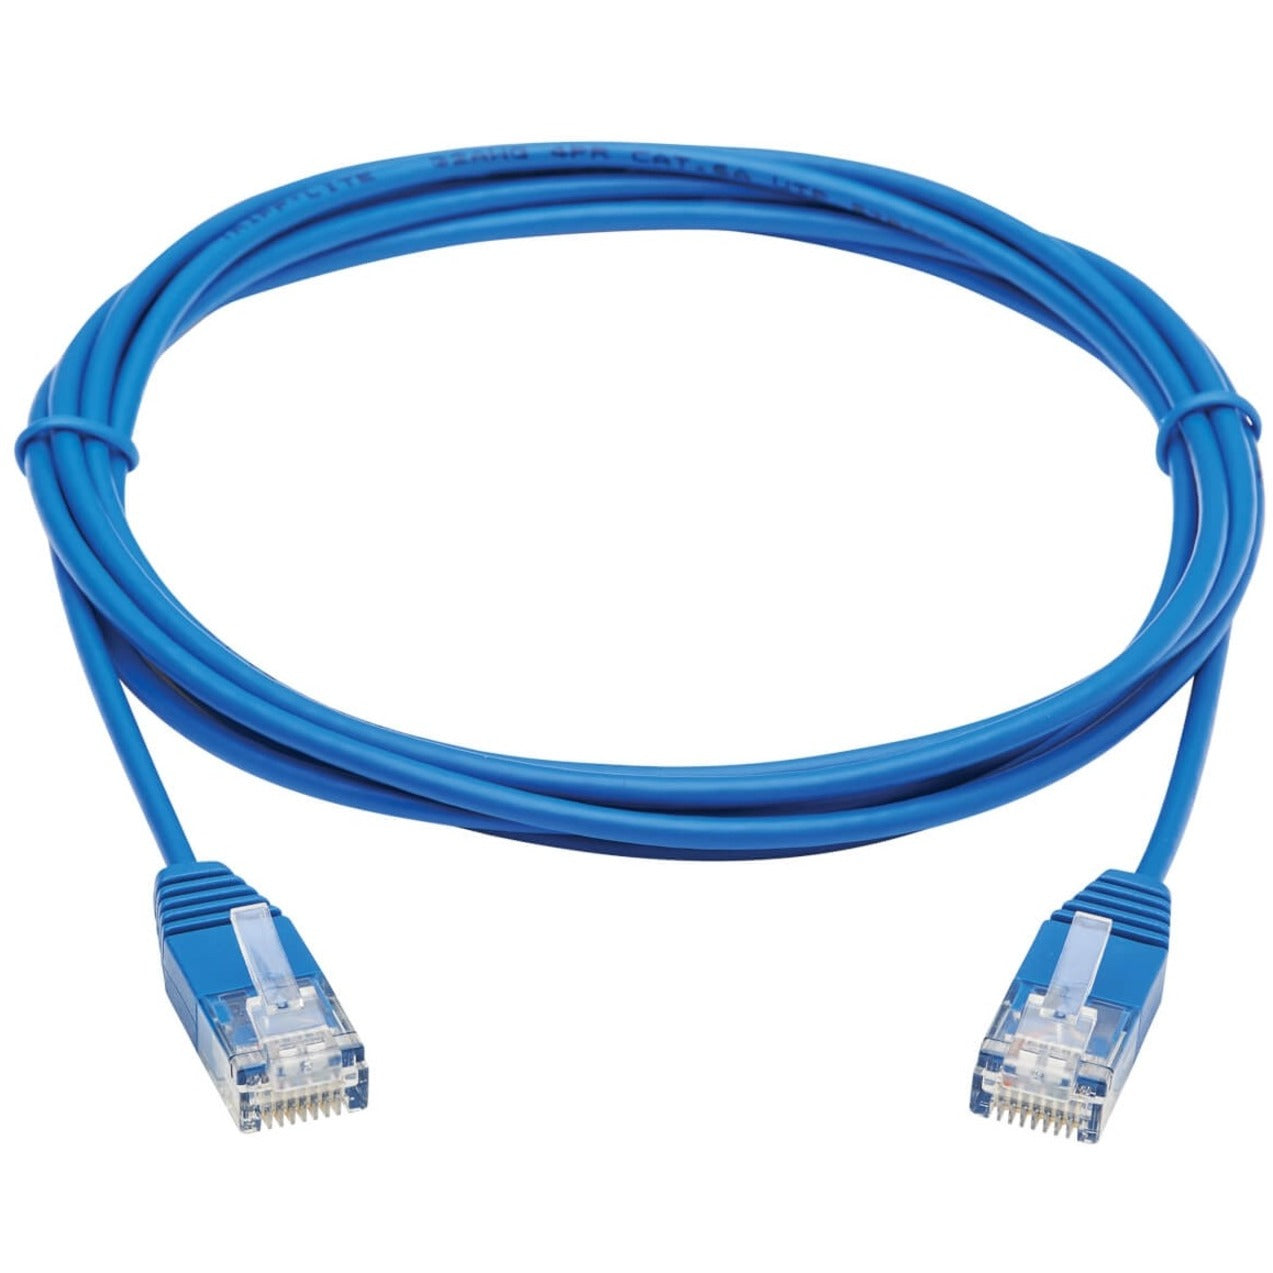 Tripp Lite N261-UR07-BL Cat6a 10G Certified Molded Ultra-Slim UTP Ethernet Cable, Blue, 7 ft.